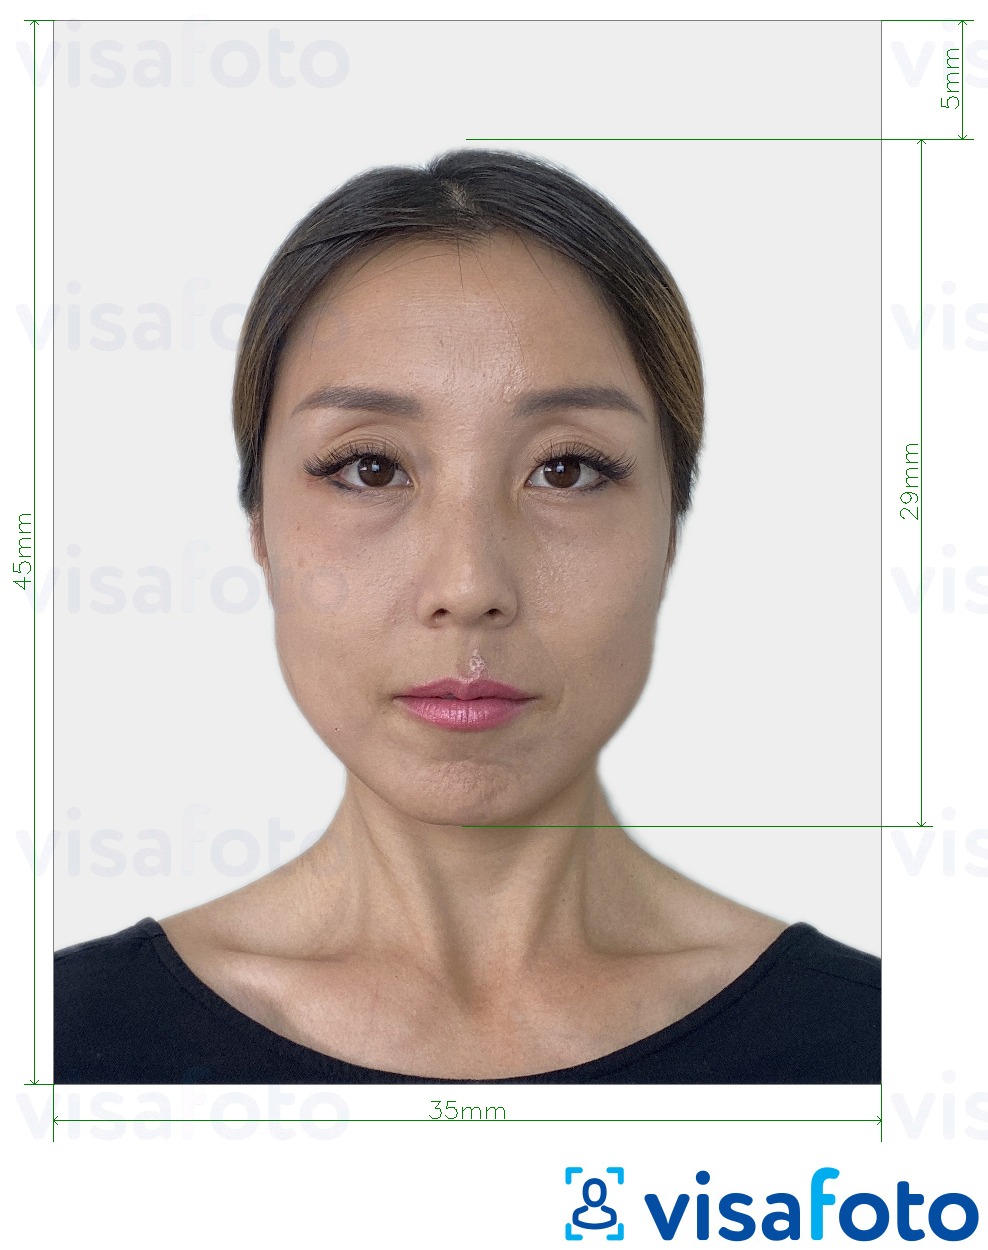 Príklad fotografie pre Japonské elektronické vízum 35x45 mm s presnou špecifikáciou veľkosti